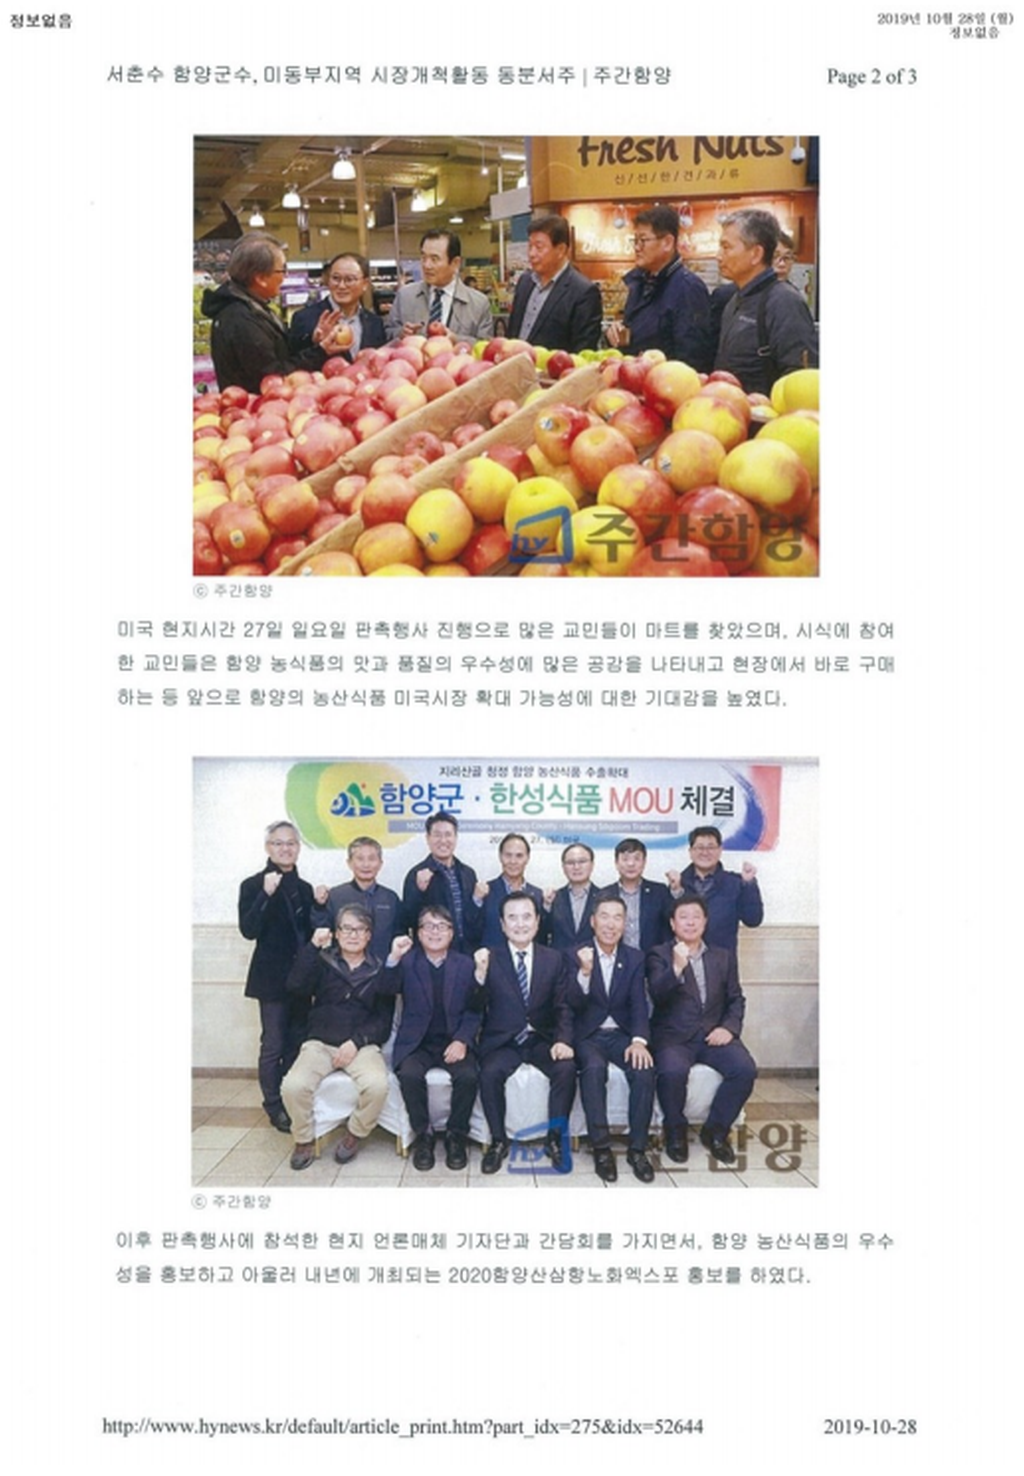 2019.10.29. 공약 2-22 농특산물 군수 품질인증 브랜드화 사업2